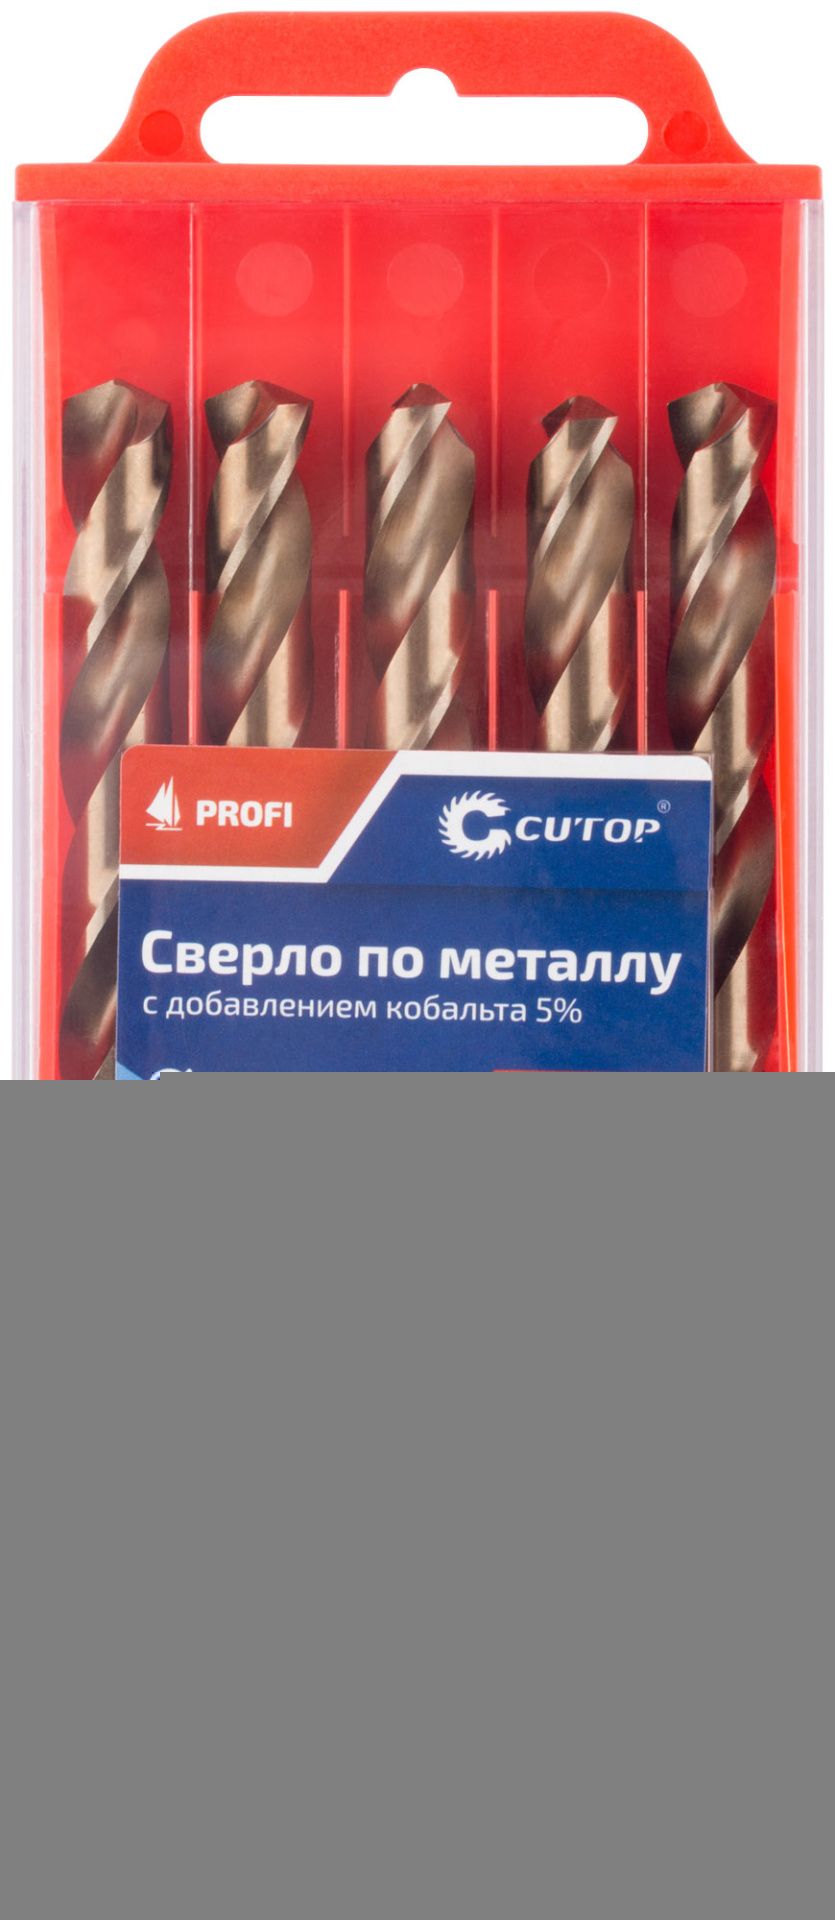 Сверло по металлу Profi с кобальтом 5%, 3,2 x 65 мм (10 шт) Cutop